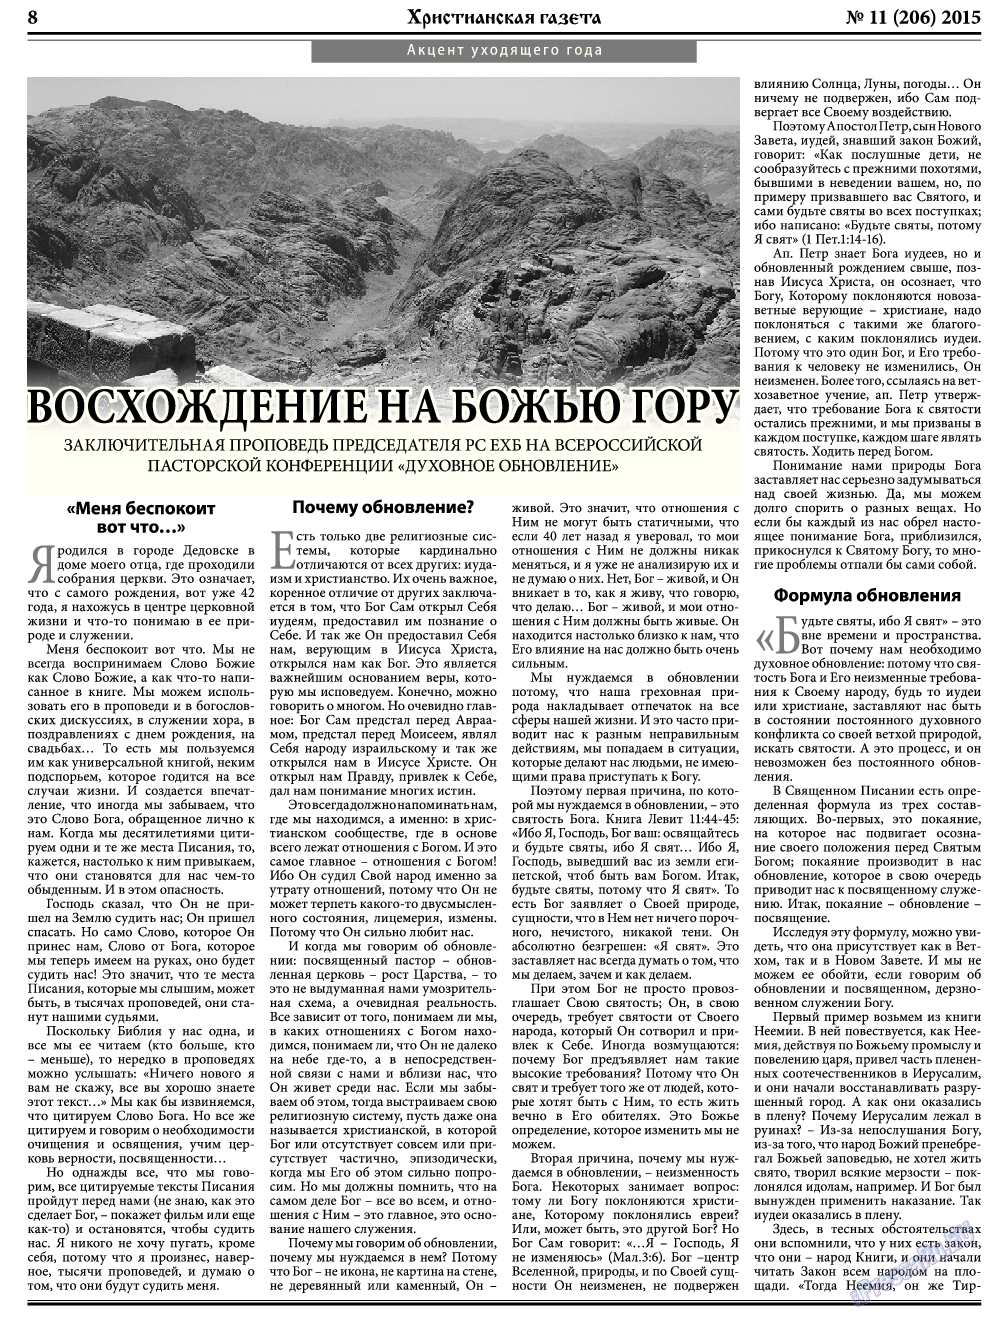 Христианская газета, газета. 2015 №11 стр.8